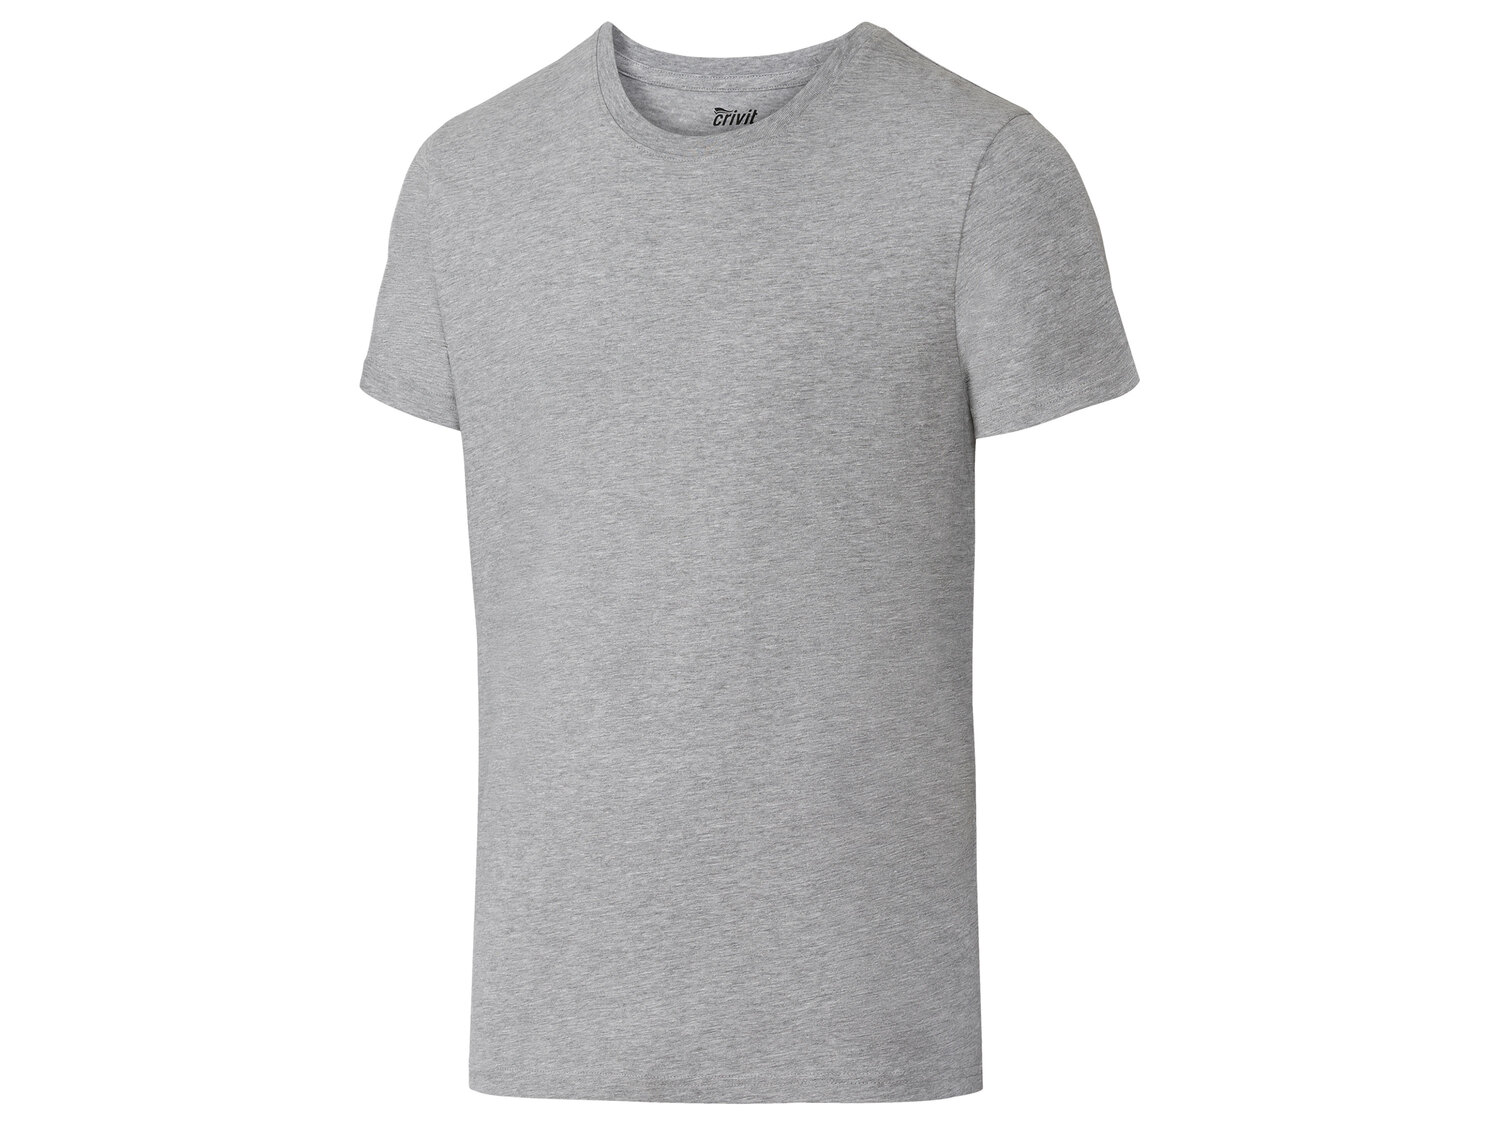 T-shirt , le prix 2.99 € 
- Du S au XL selon modèle
- Ex. 90 % coton et 10 ...